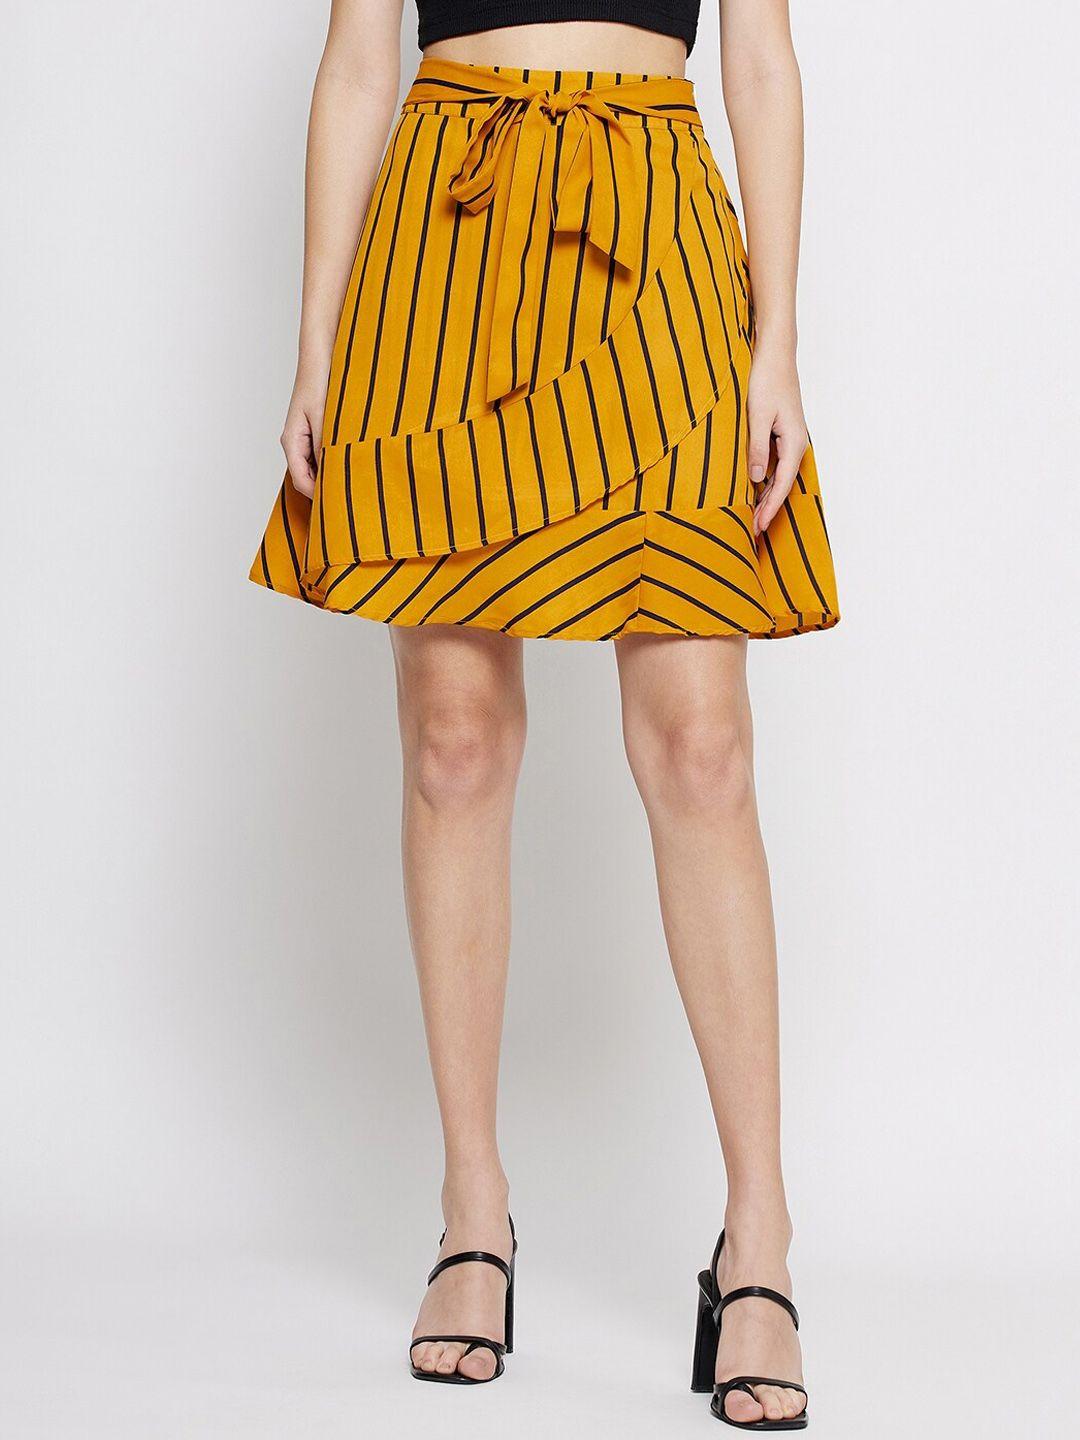 tulip 21 striped above knee length skirt